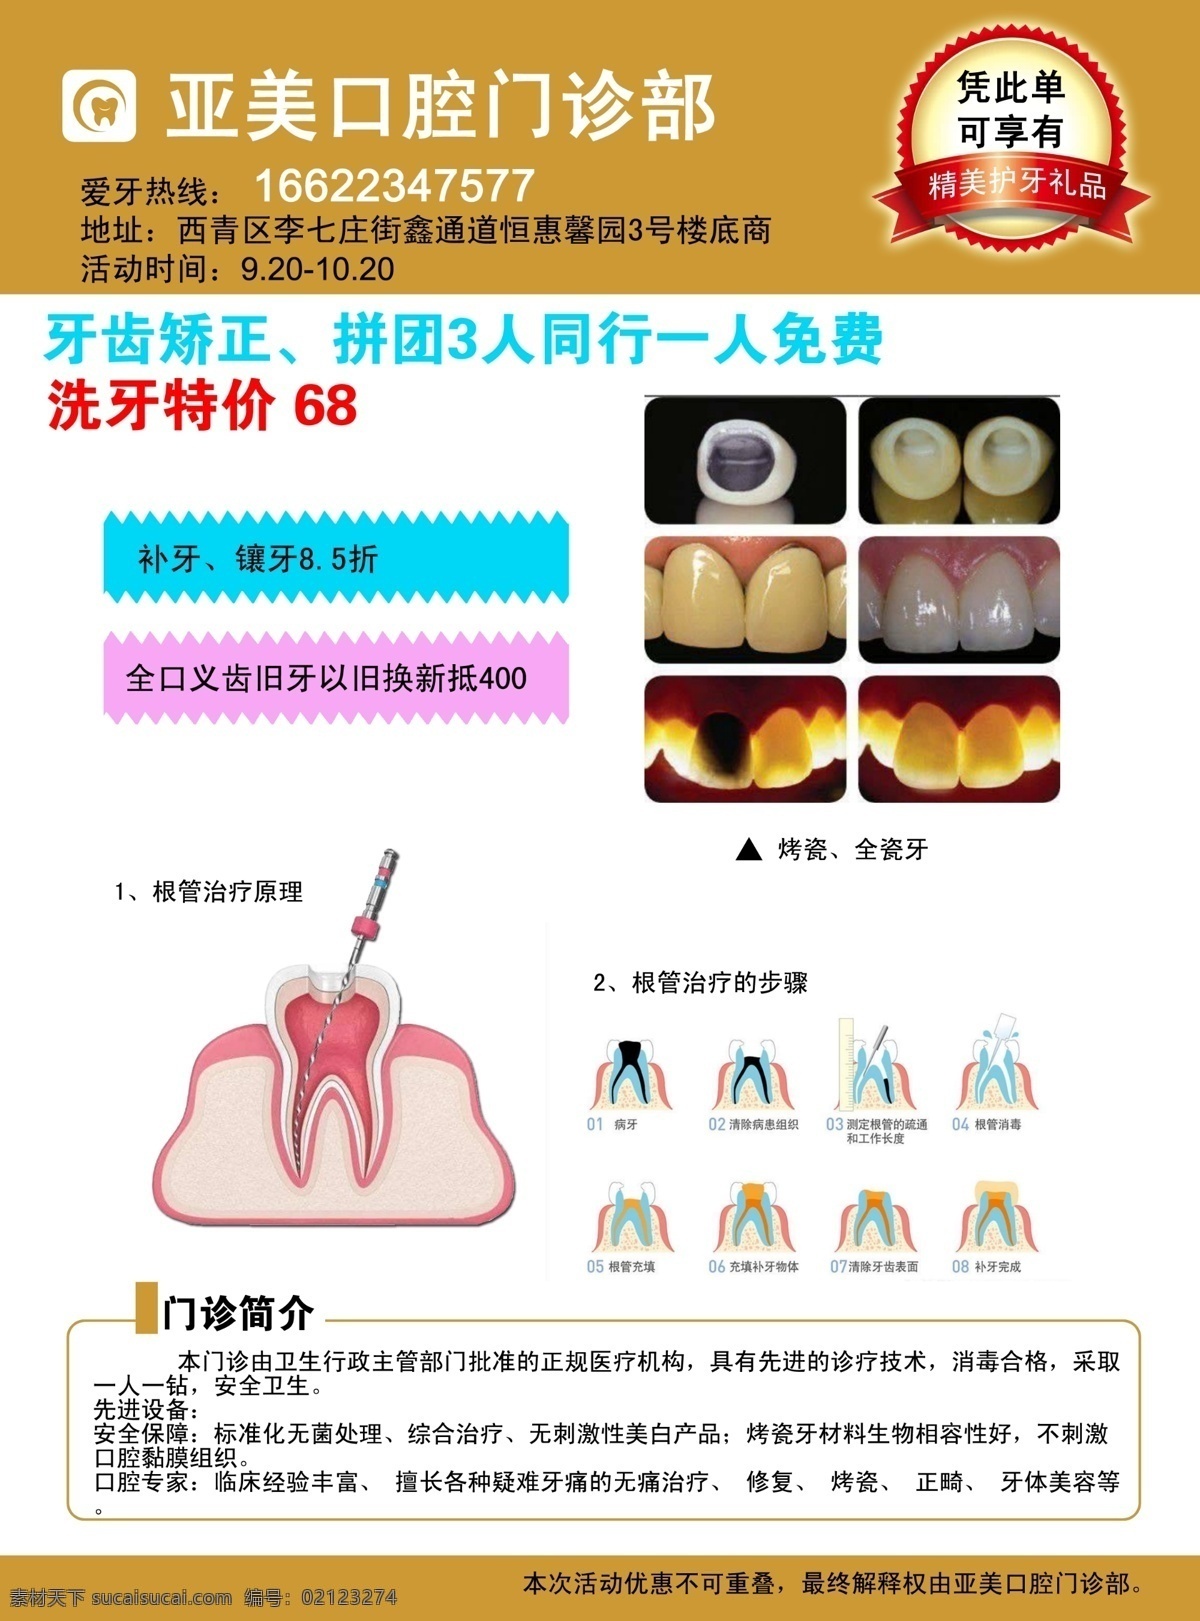 牙科诊所 单 页 设计图 宣传页 牙科 诊所 单页 牙齿 卡通 室内广告设计 dm宣传单